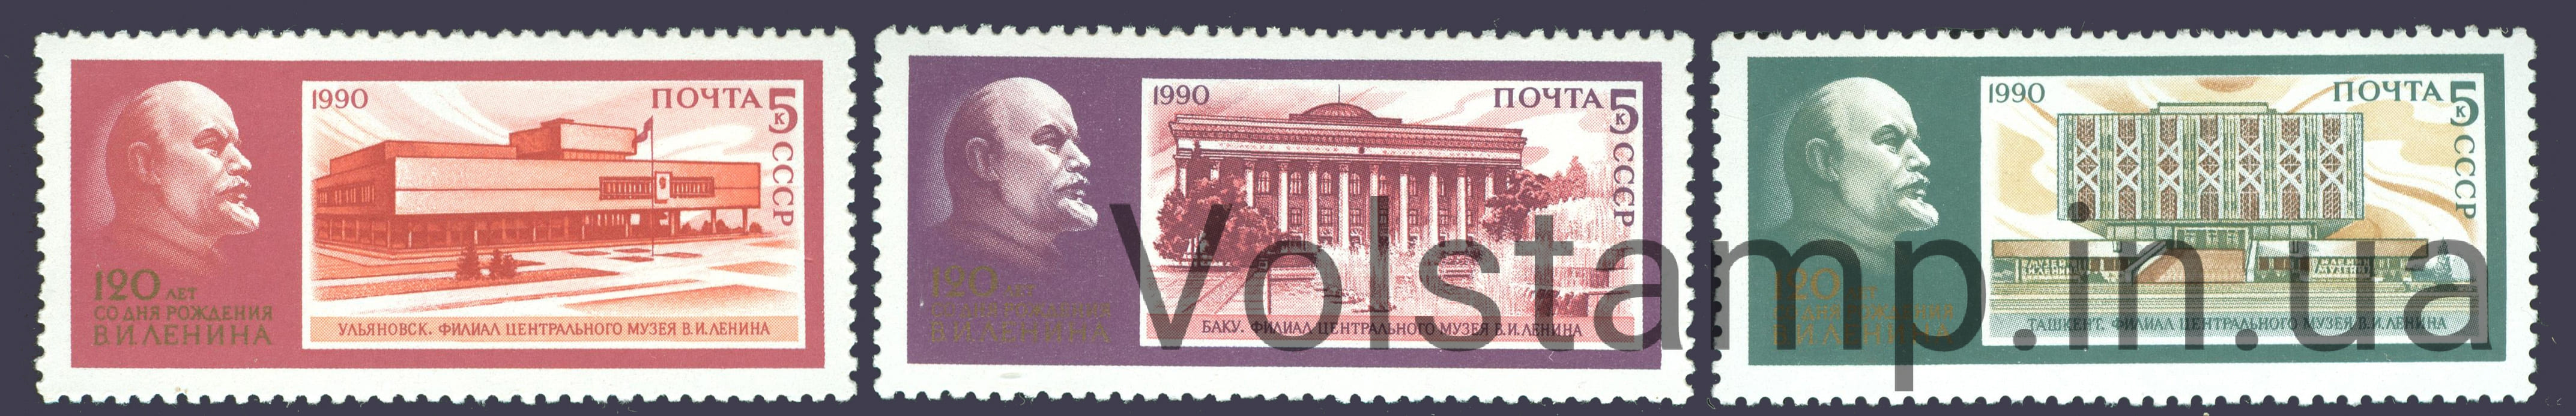 1990 серия марок 120 лет со дня рождения В.И.Ленина №6130-6132